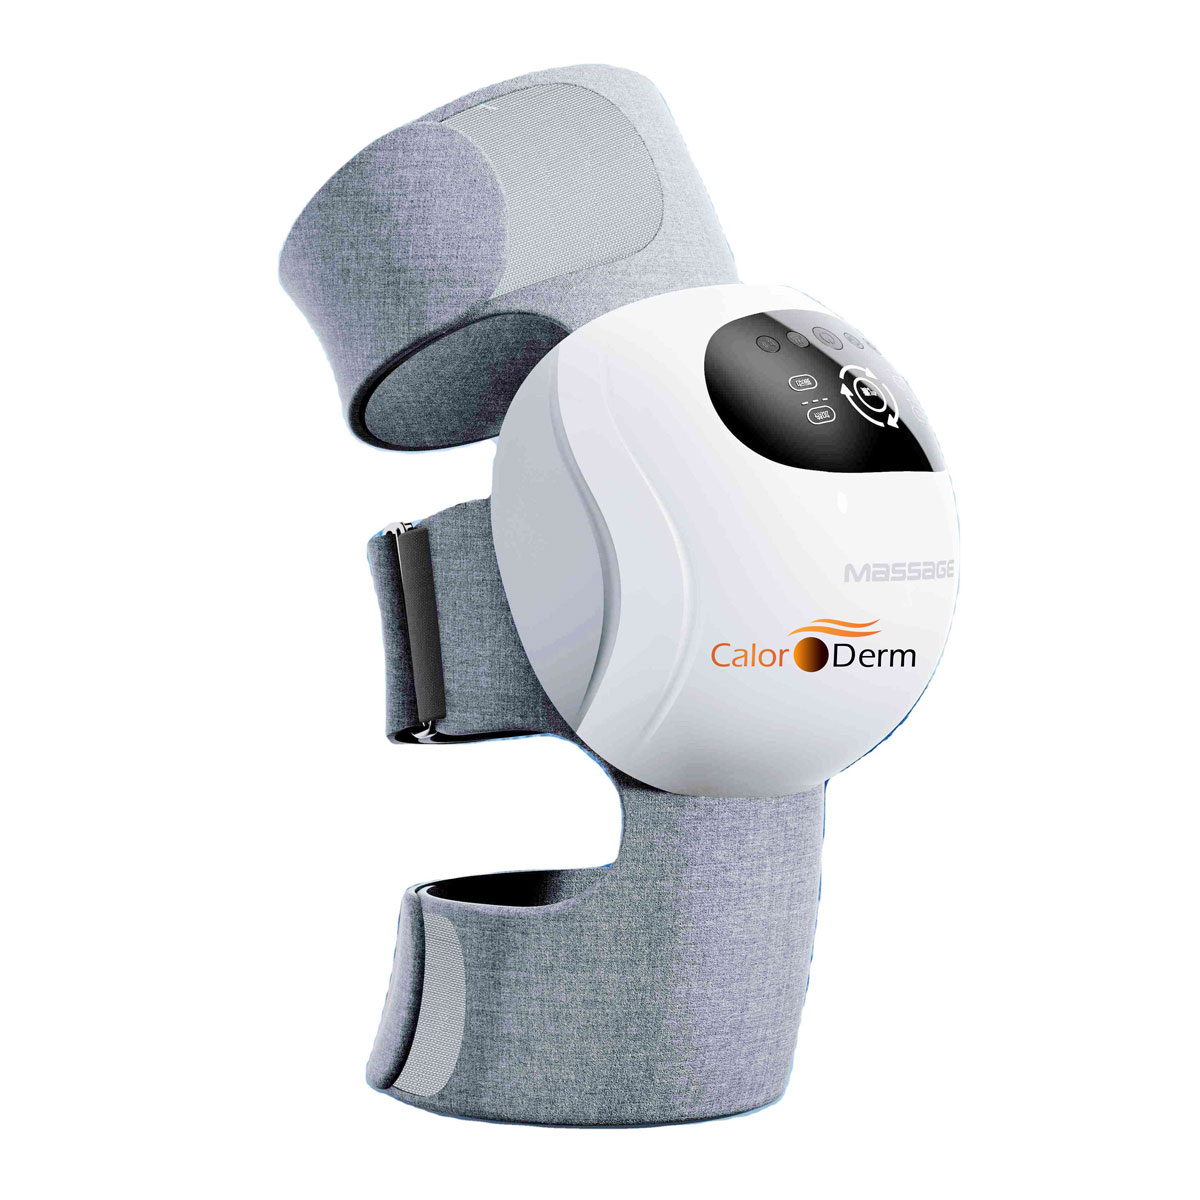 USB Heated Shoulder Massager Shoulder Brace, Electric Heated Knee